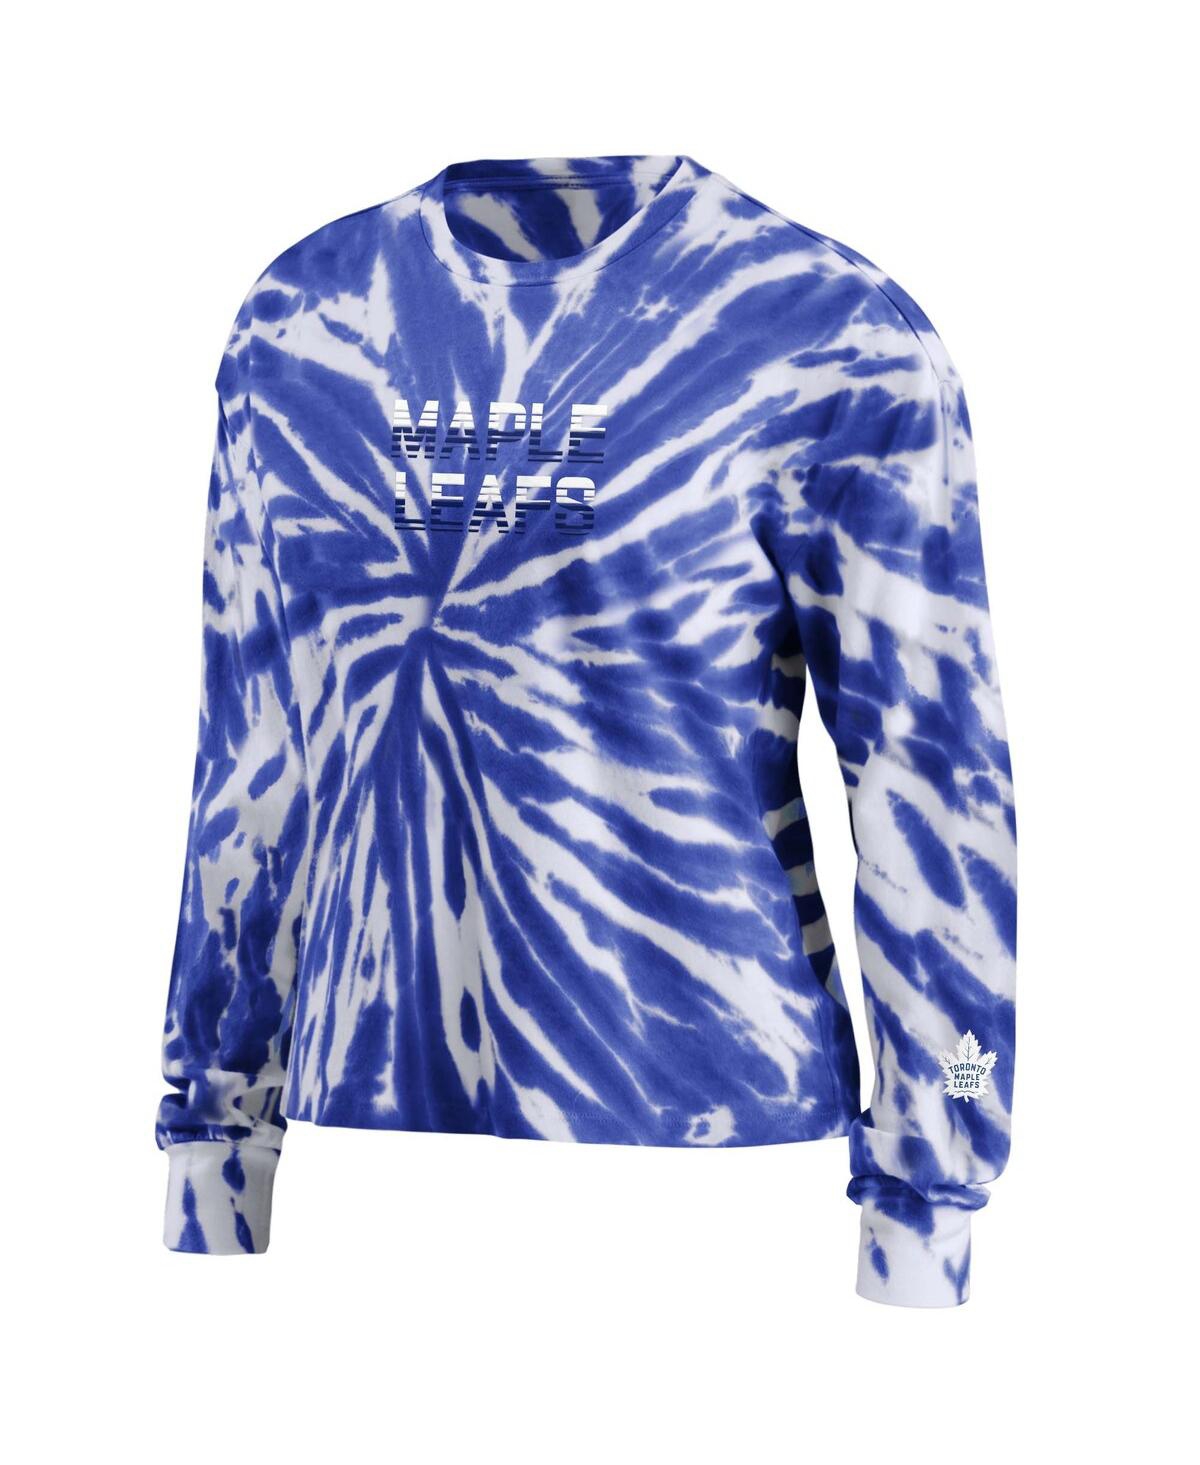 Shop Wear By Erin Andrews Women's  Blue Toronto Maple Leafs Tie-dye Long Sleeve T-shirt